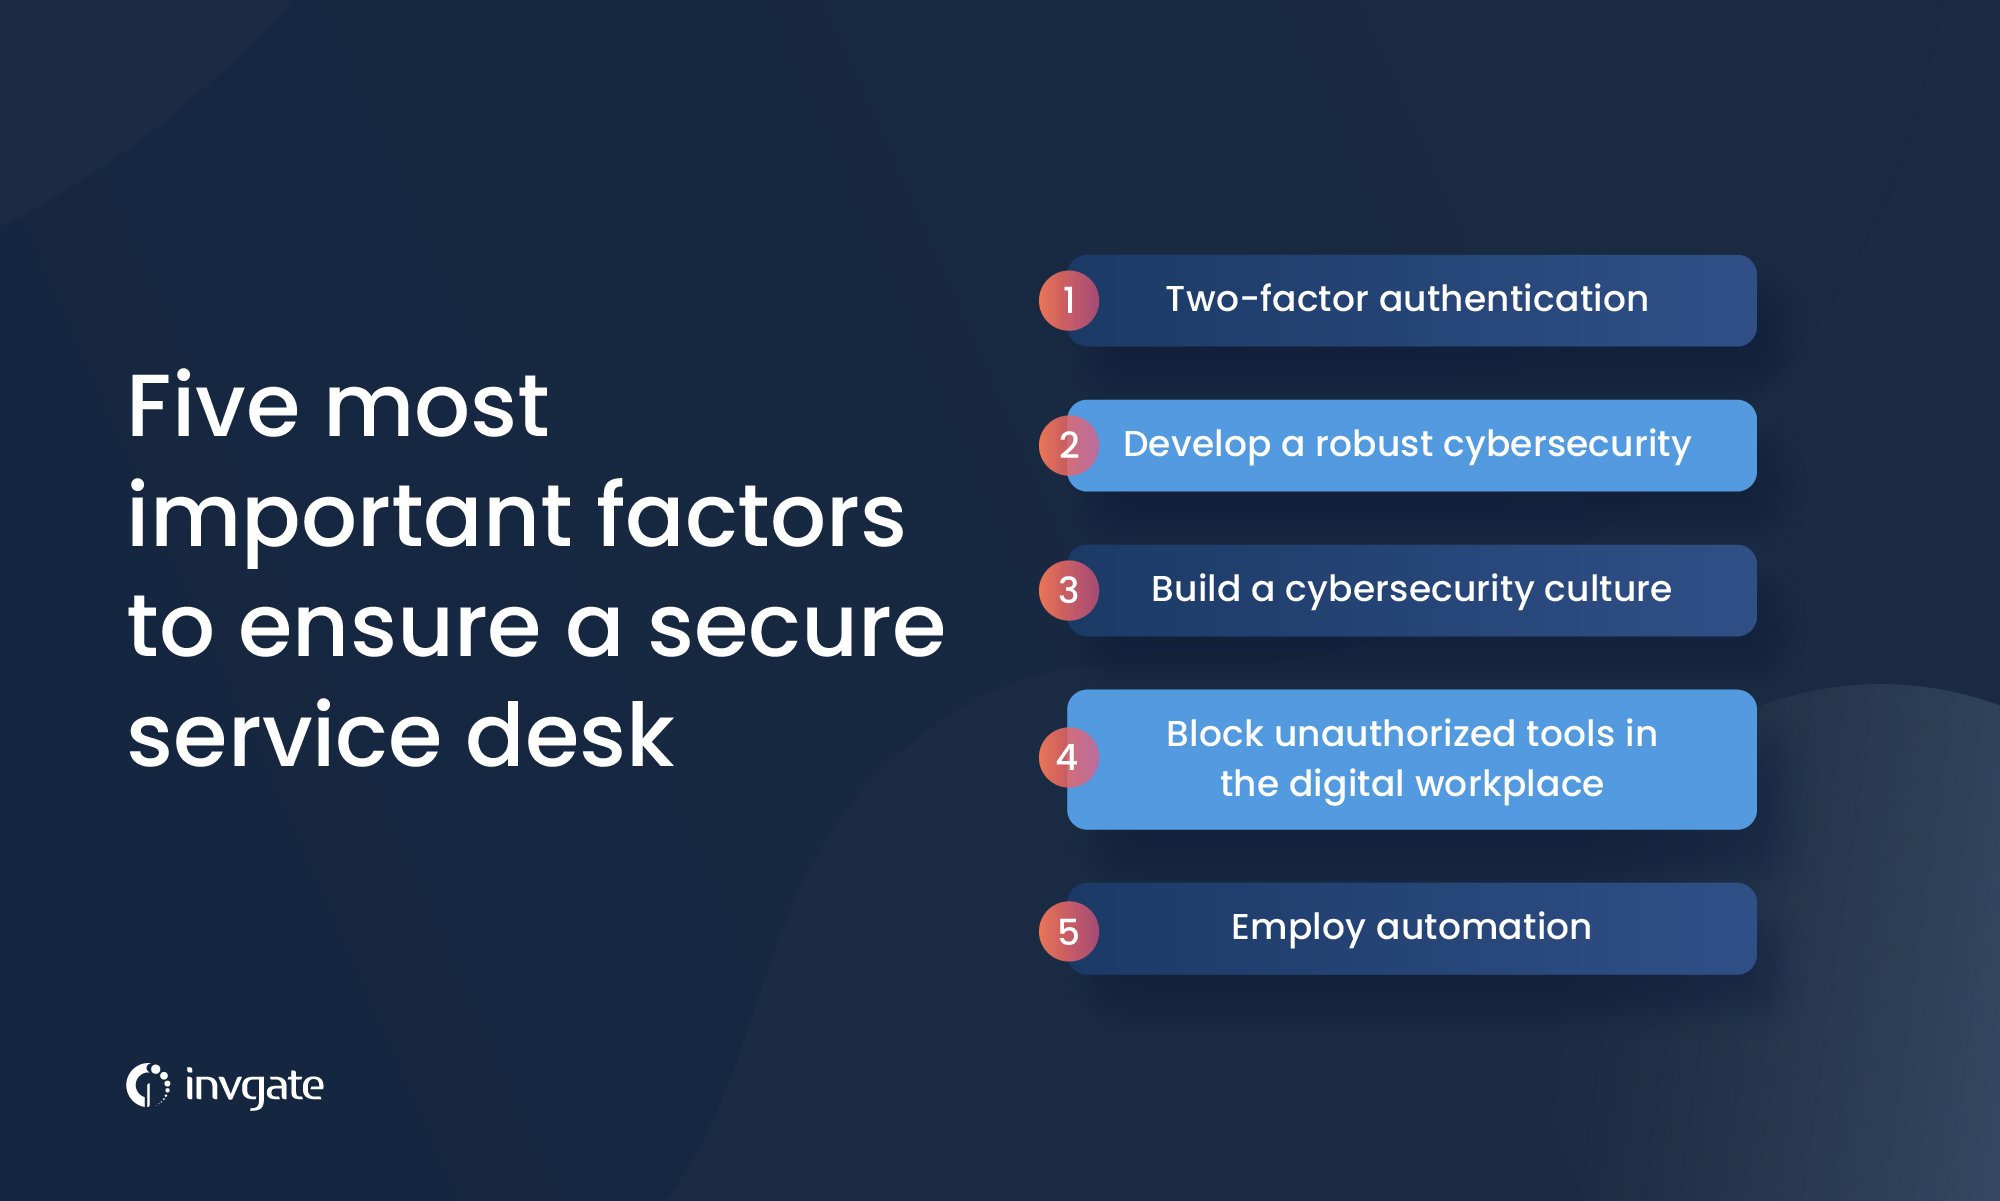 Five most important factors to ensure a secure service desk